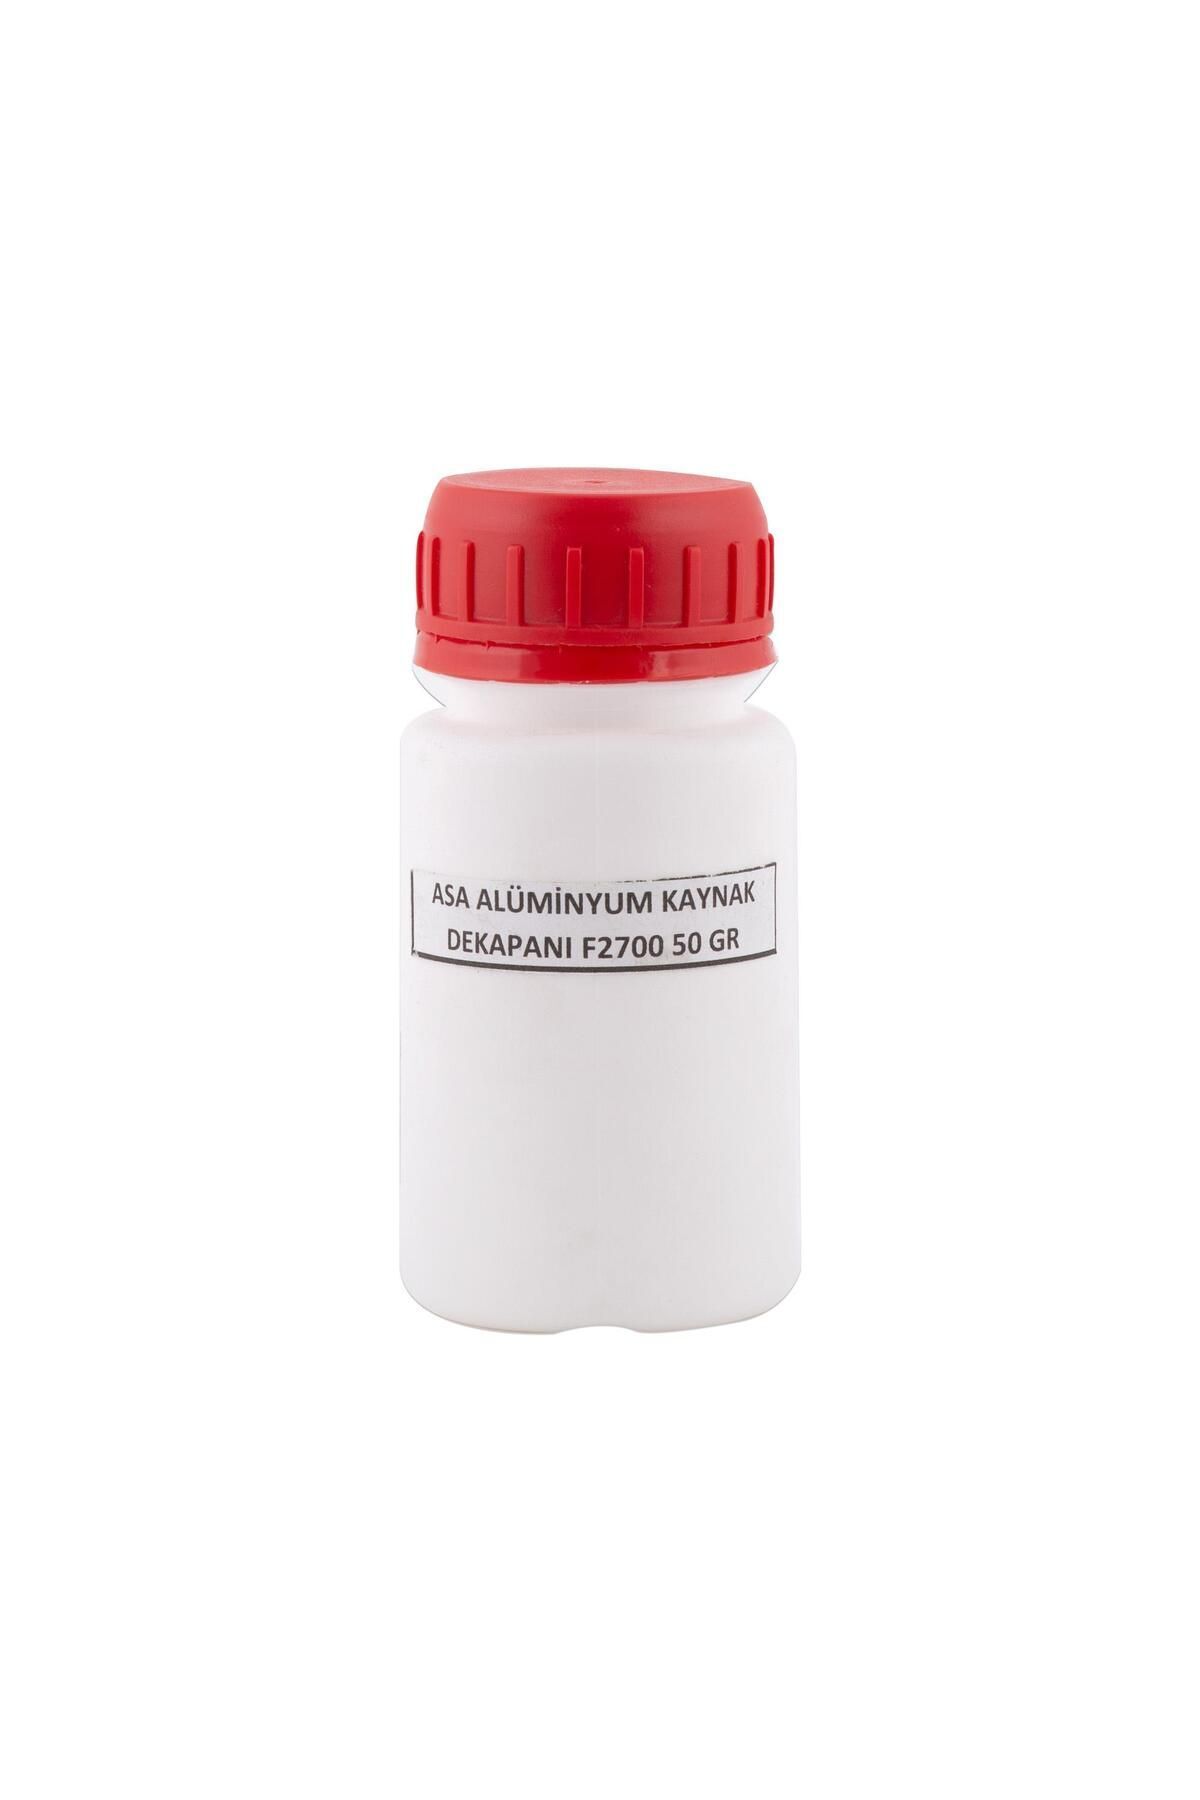 Demiriz Alüminyum Kaynak Dekapanı Küçük Kutu (50 Gr)